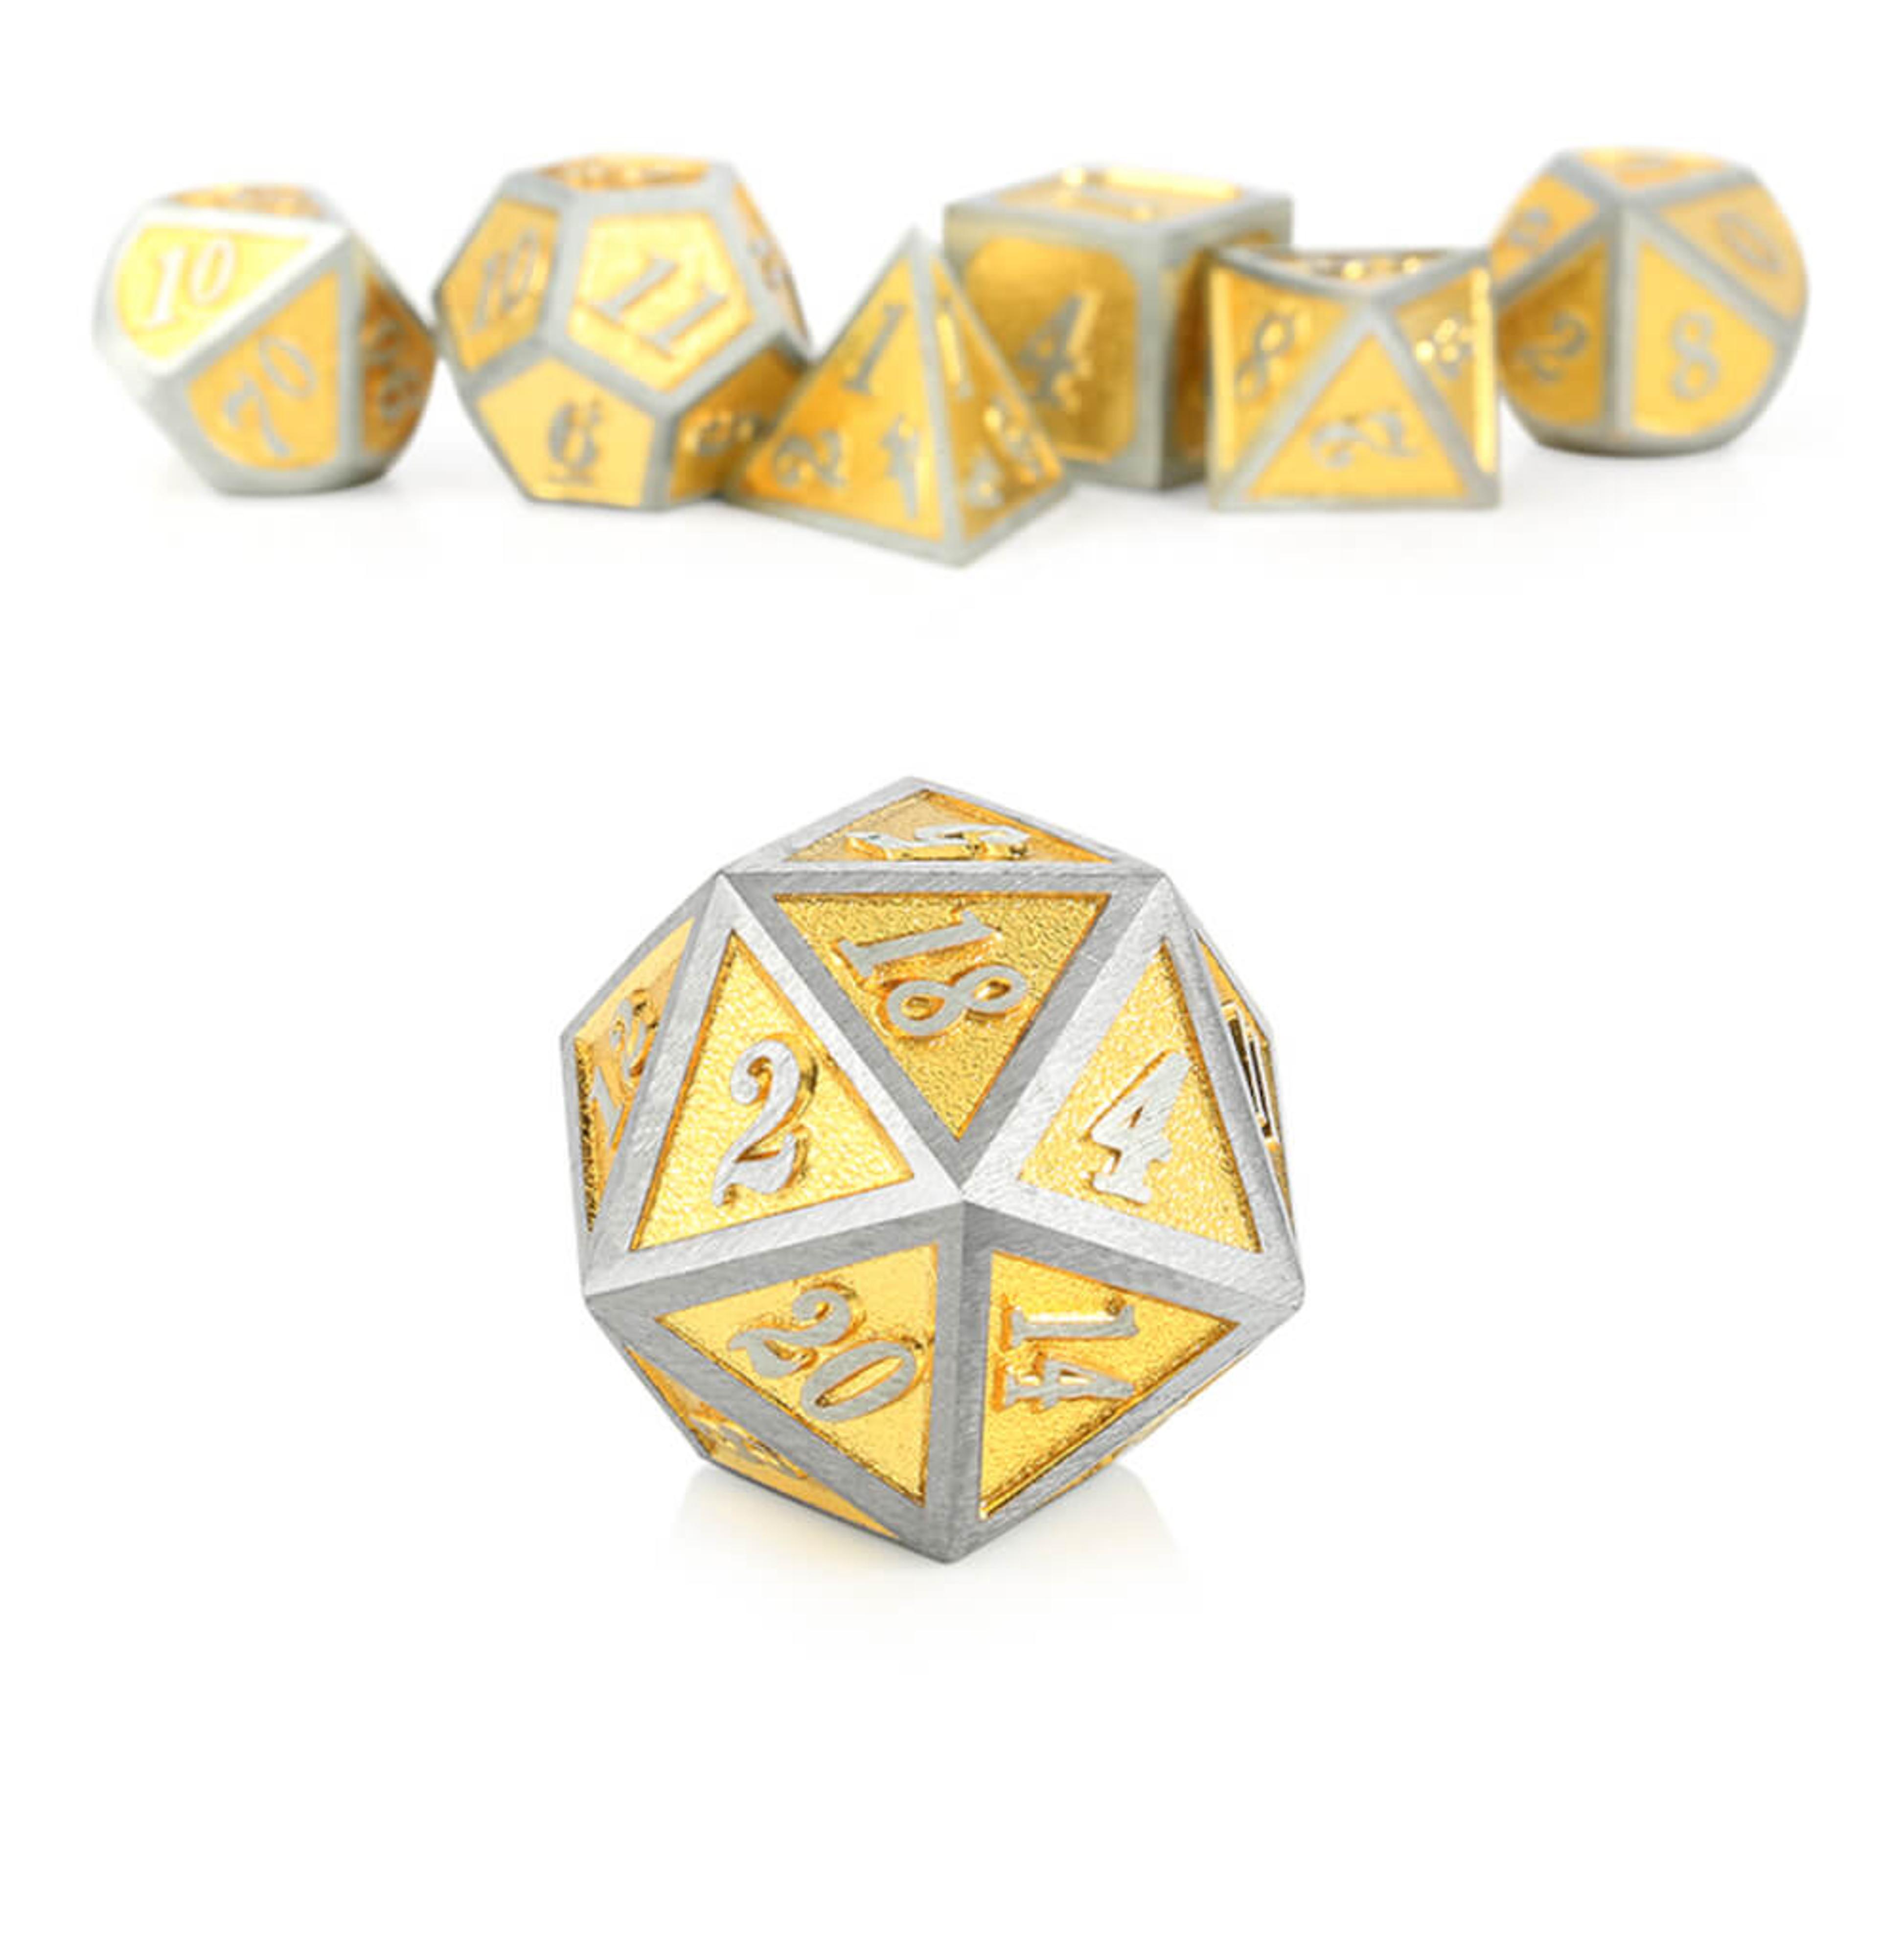 Dice Habit Polyhedral Metal and Enamel 7 Die Set - Golden